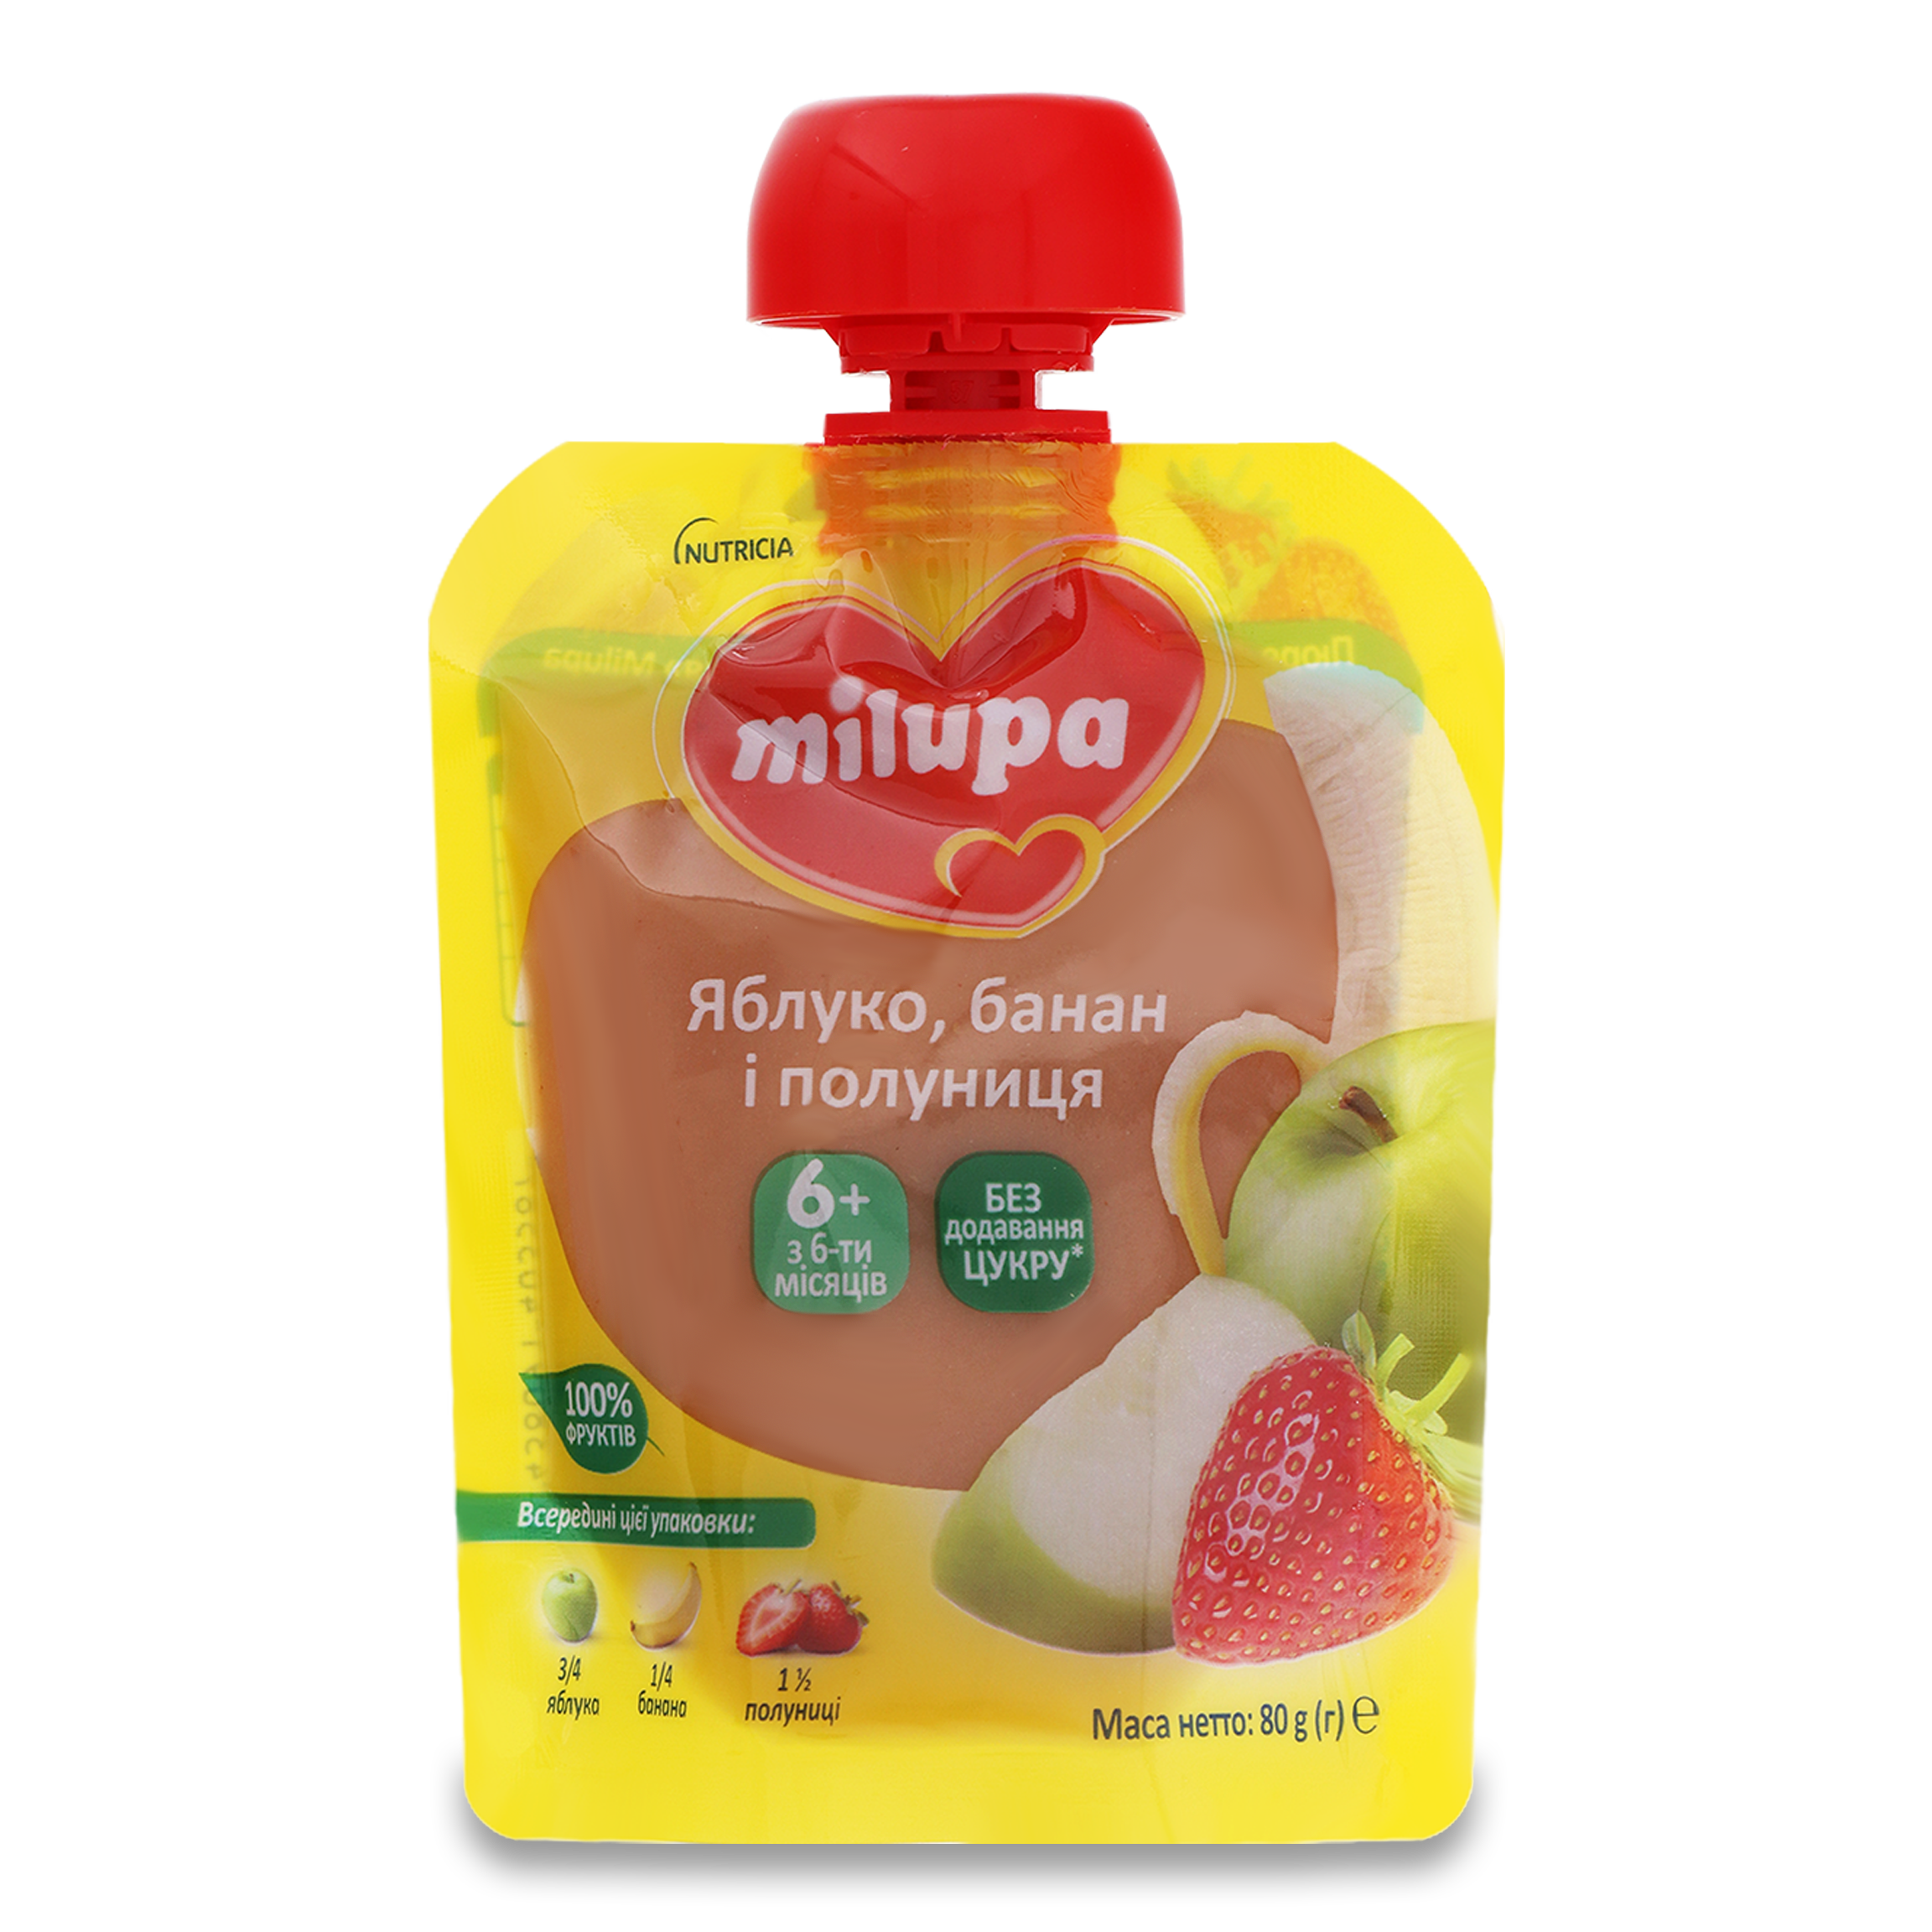 Пюре Milupa фруктове яблуко банан полуниця для дітей з 6 місяців 80г